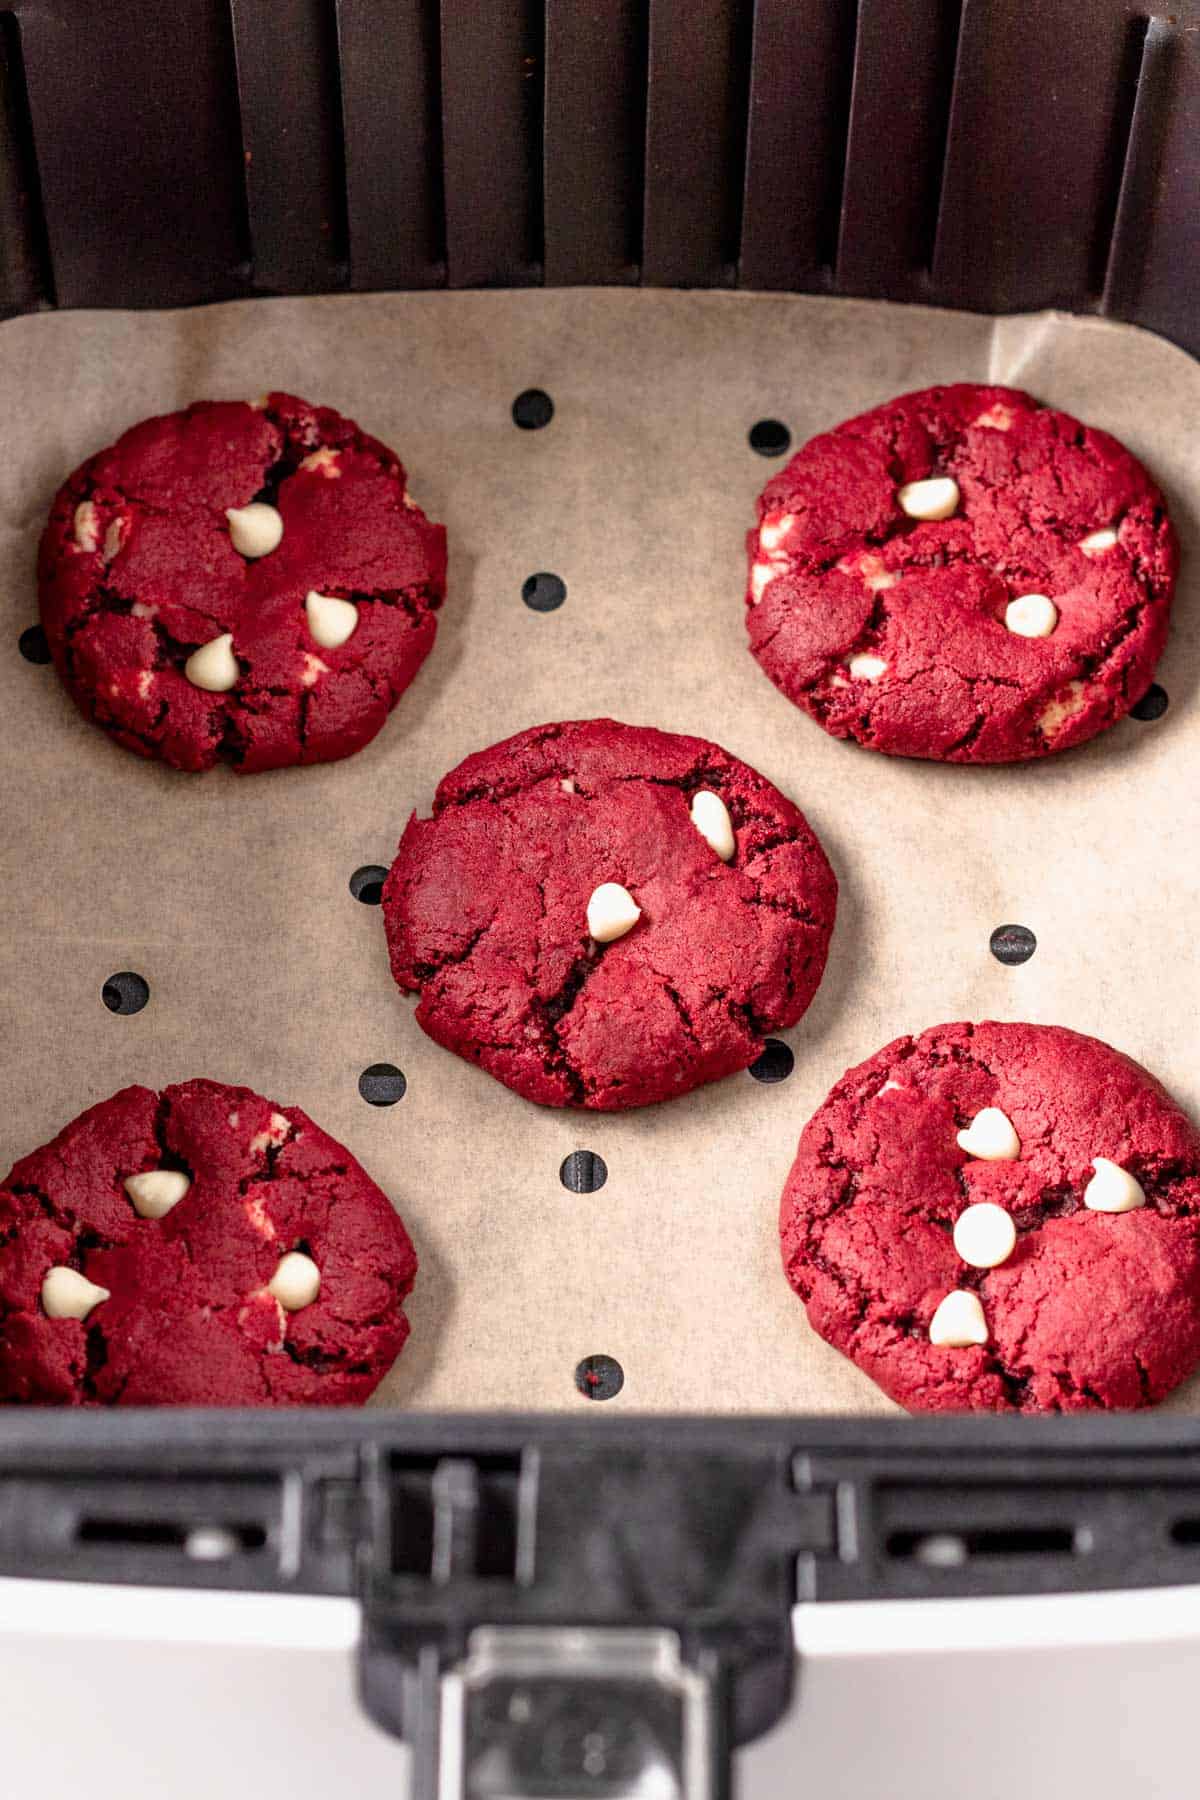 baked gluten free red velvet cookies in air fryer basket